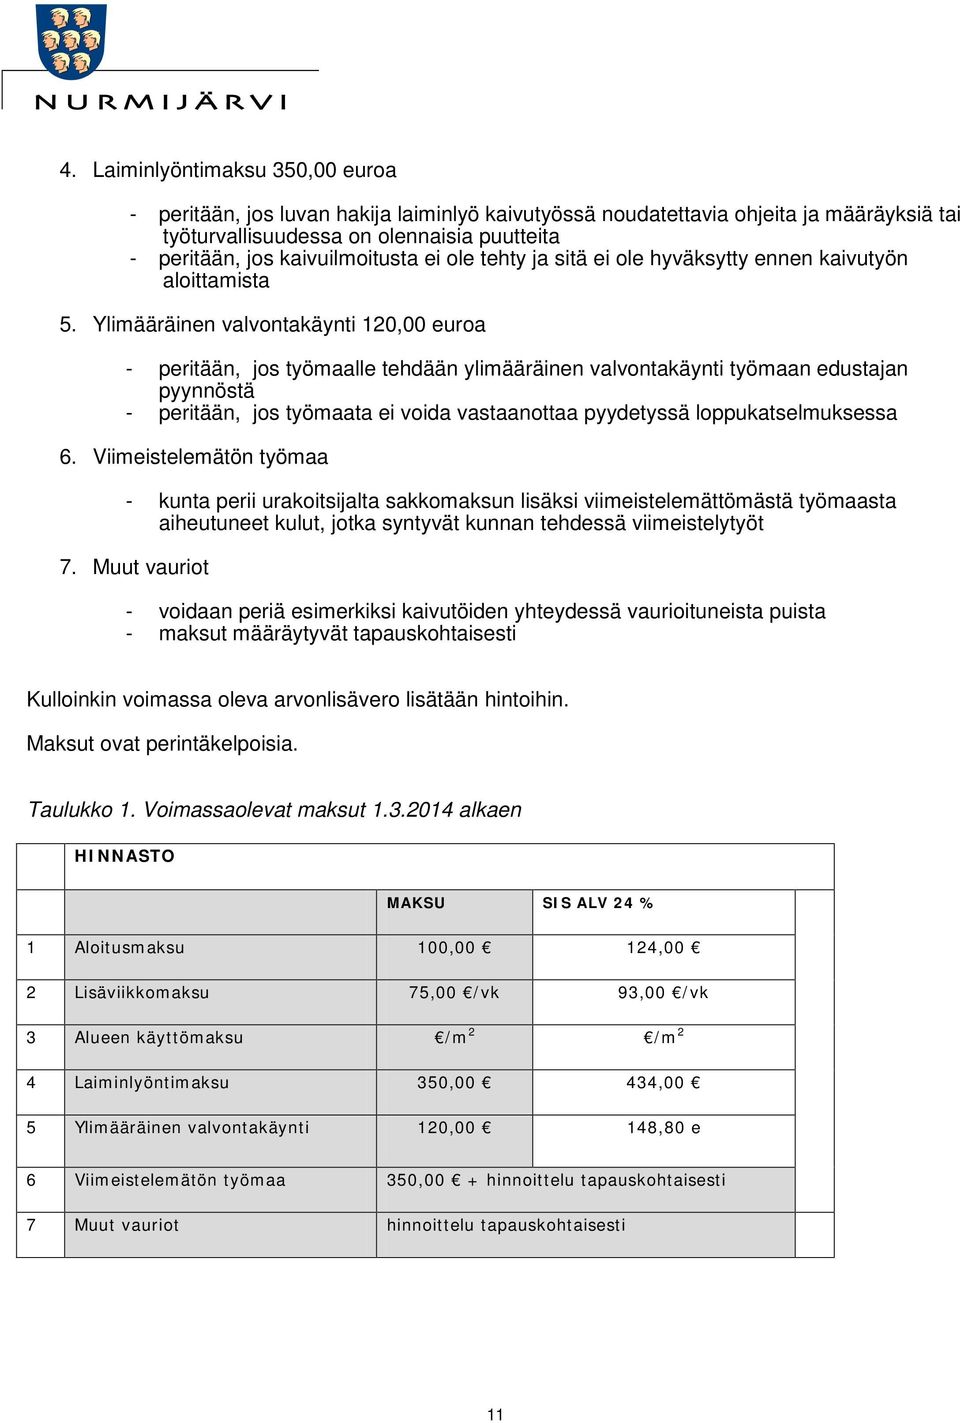 Ylimääräinen valvontakäynti 120,00 euroa - peritään, jos työmaalle tehdään ylimääräinen valvontakäynti työmaan edustajan pyynnöstä - peritään, jos työmaata ei voida vastaanottaa pyydetyssä